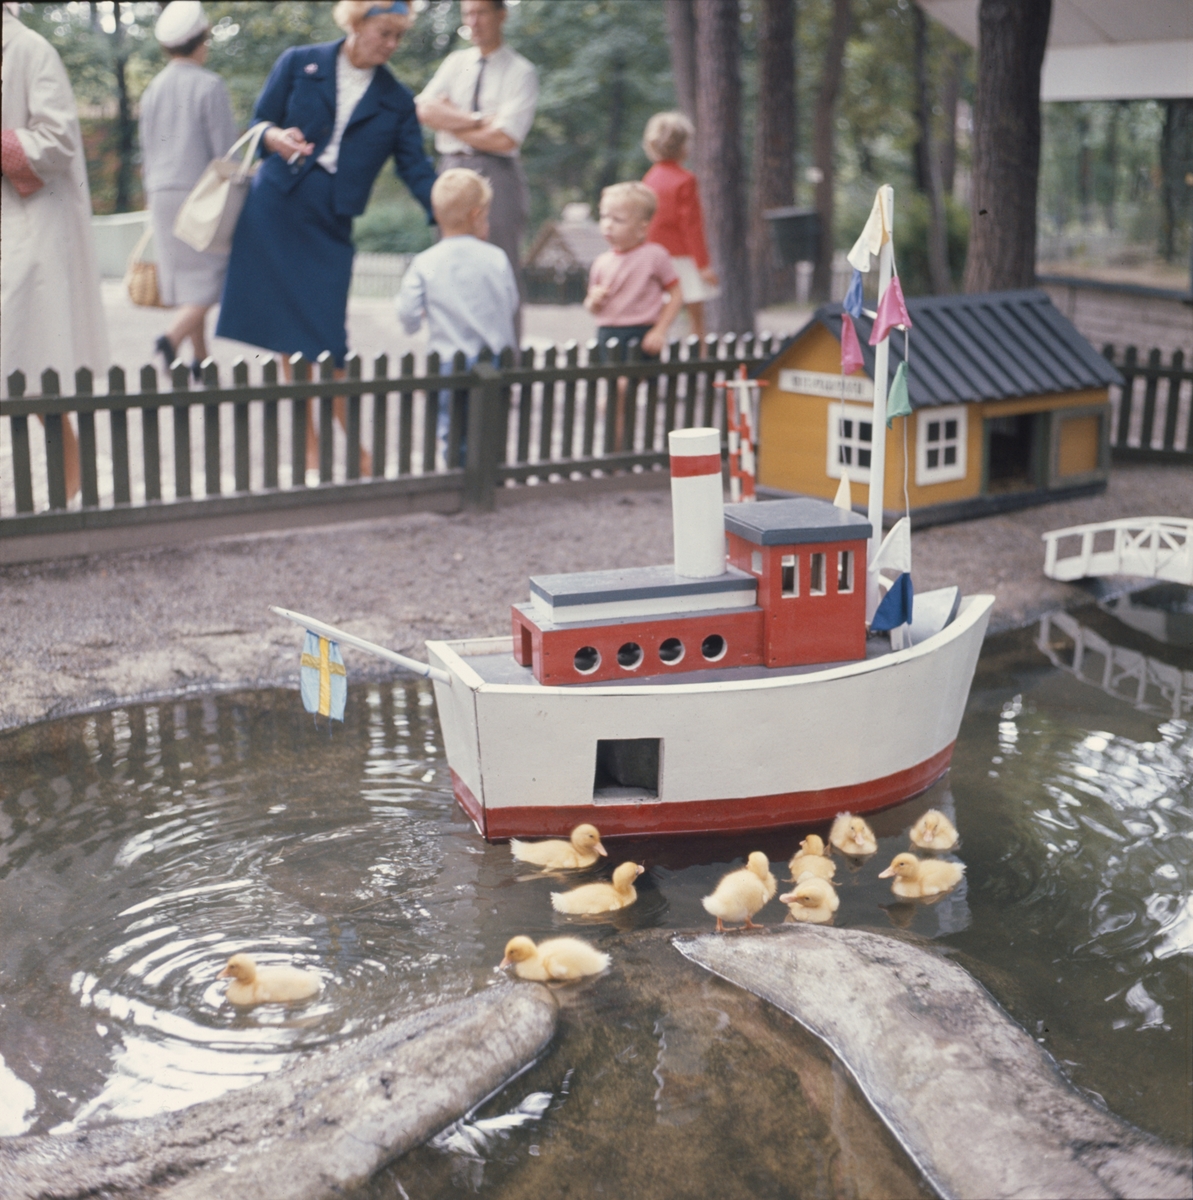 Ankungar och leksaksbåt i Lill-Skansens bassäng. I bakgrunden besökare, barn och vuxna.